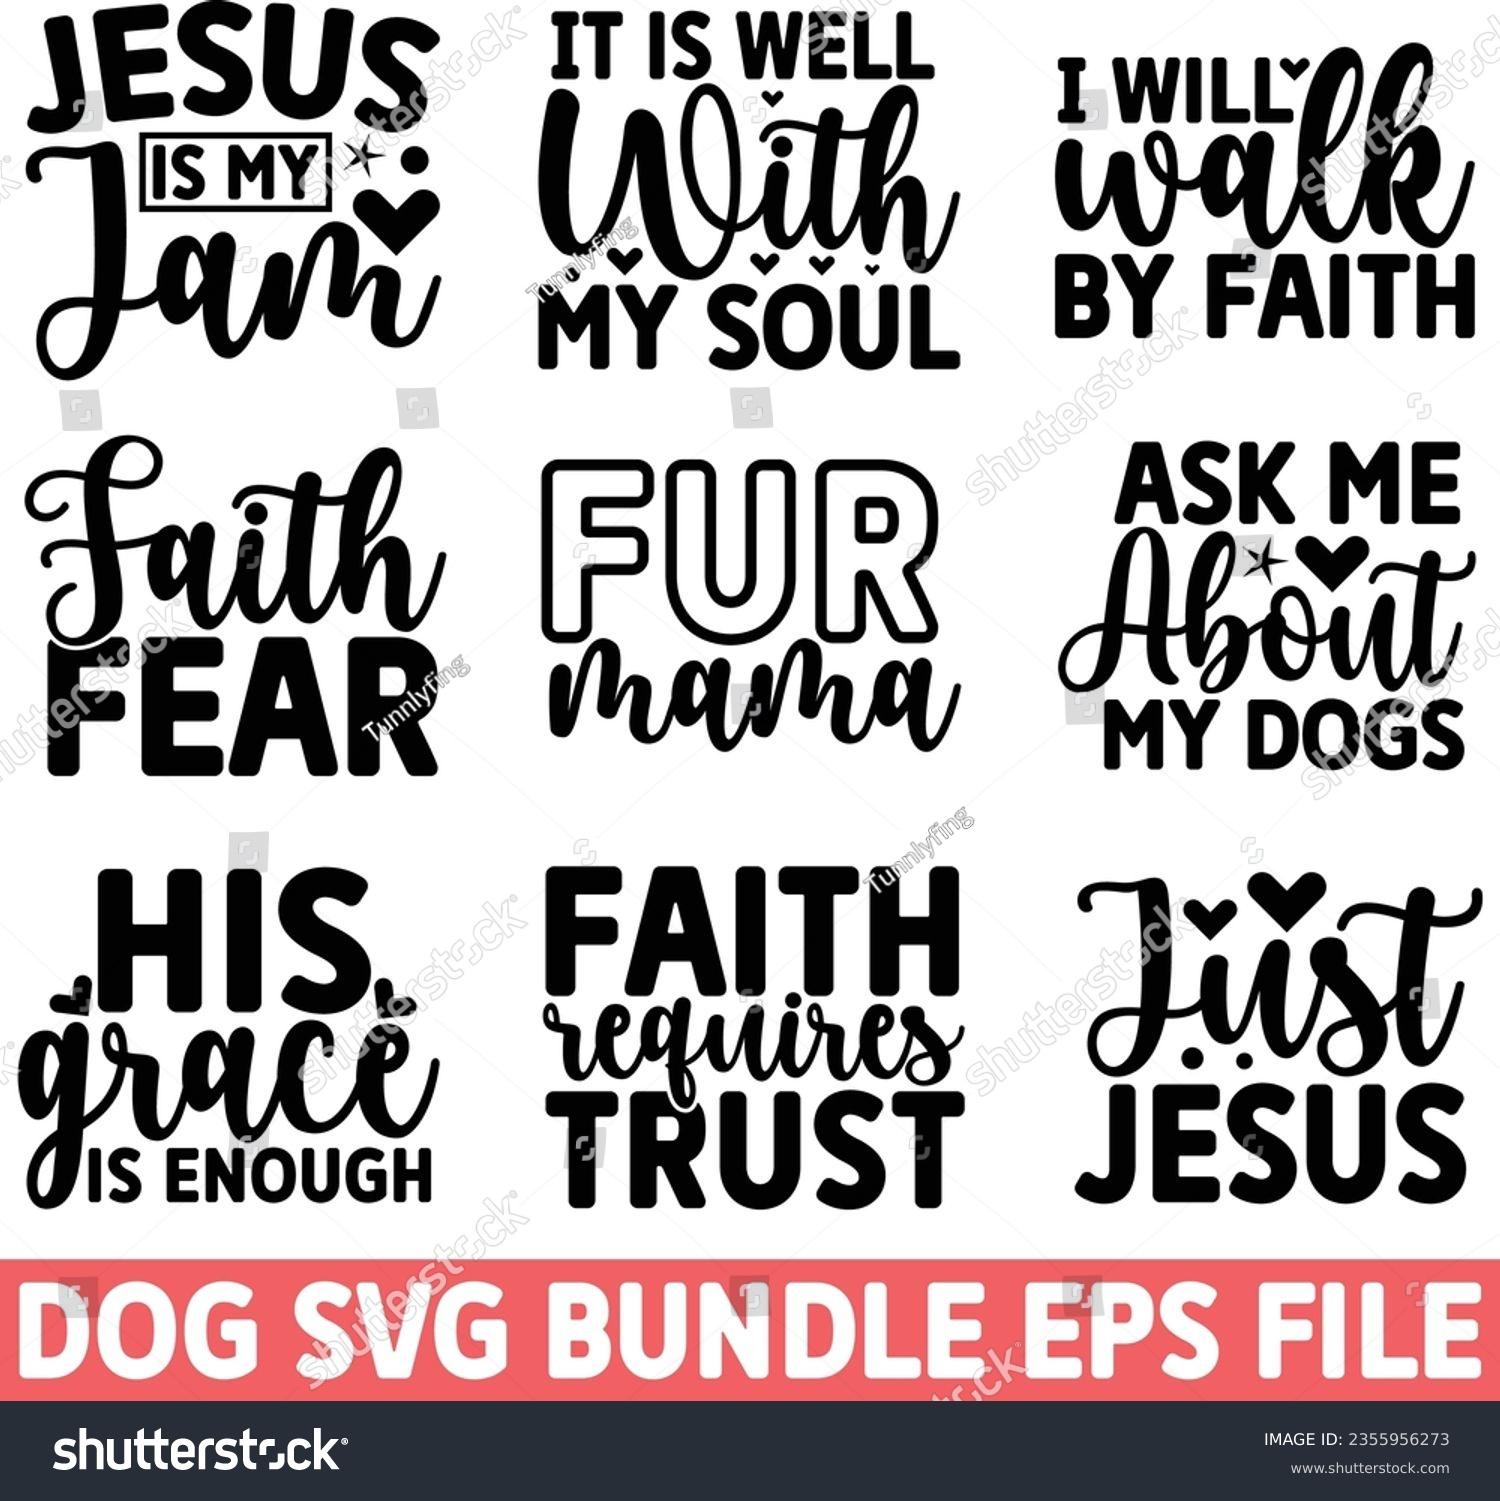 SVG of Famous SVG And Dog SVG Design Design And Baby And Kids EPS File Digital Download svg